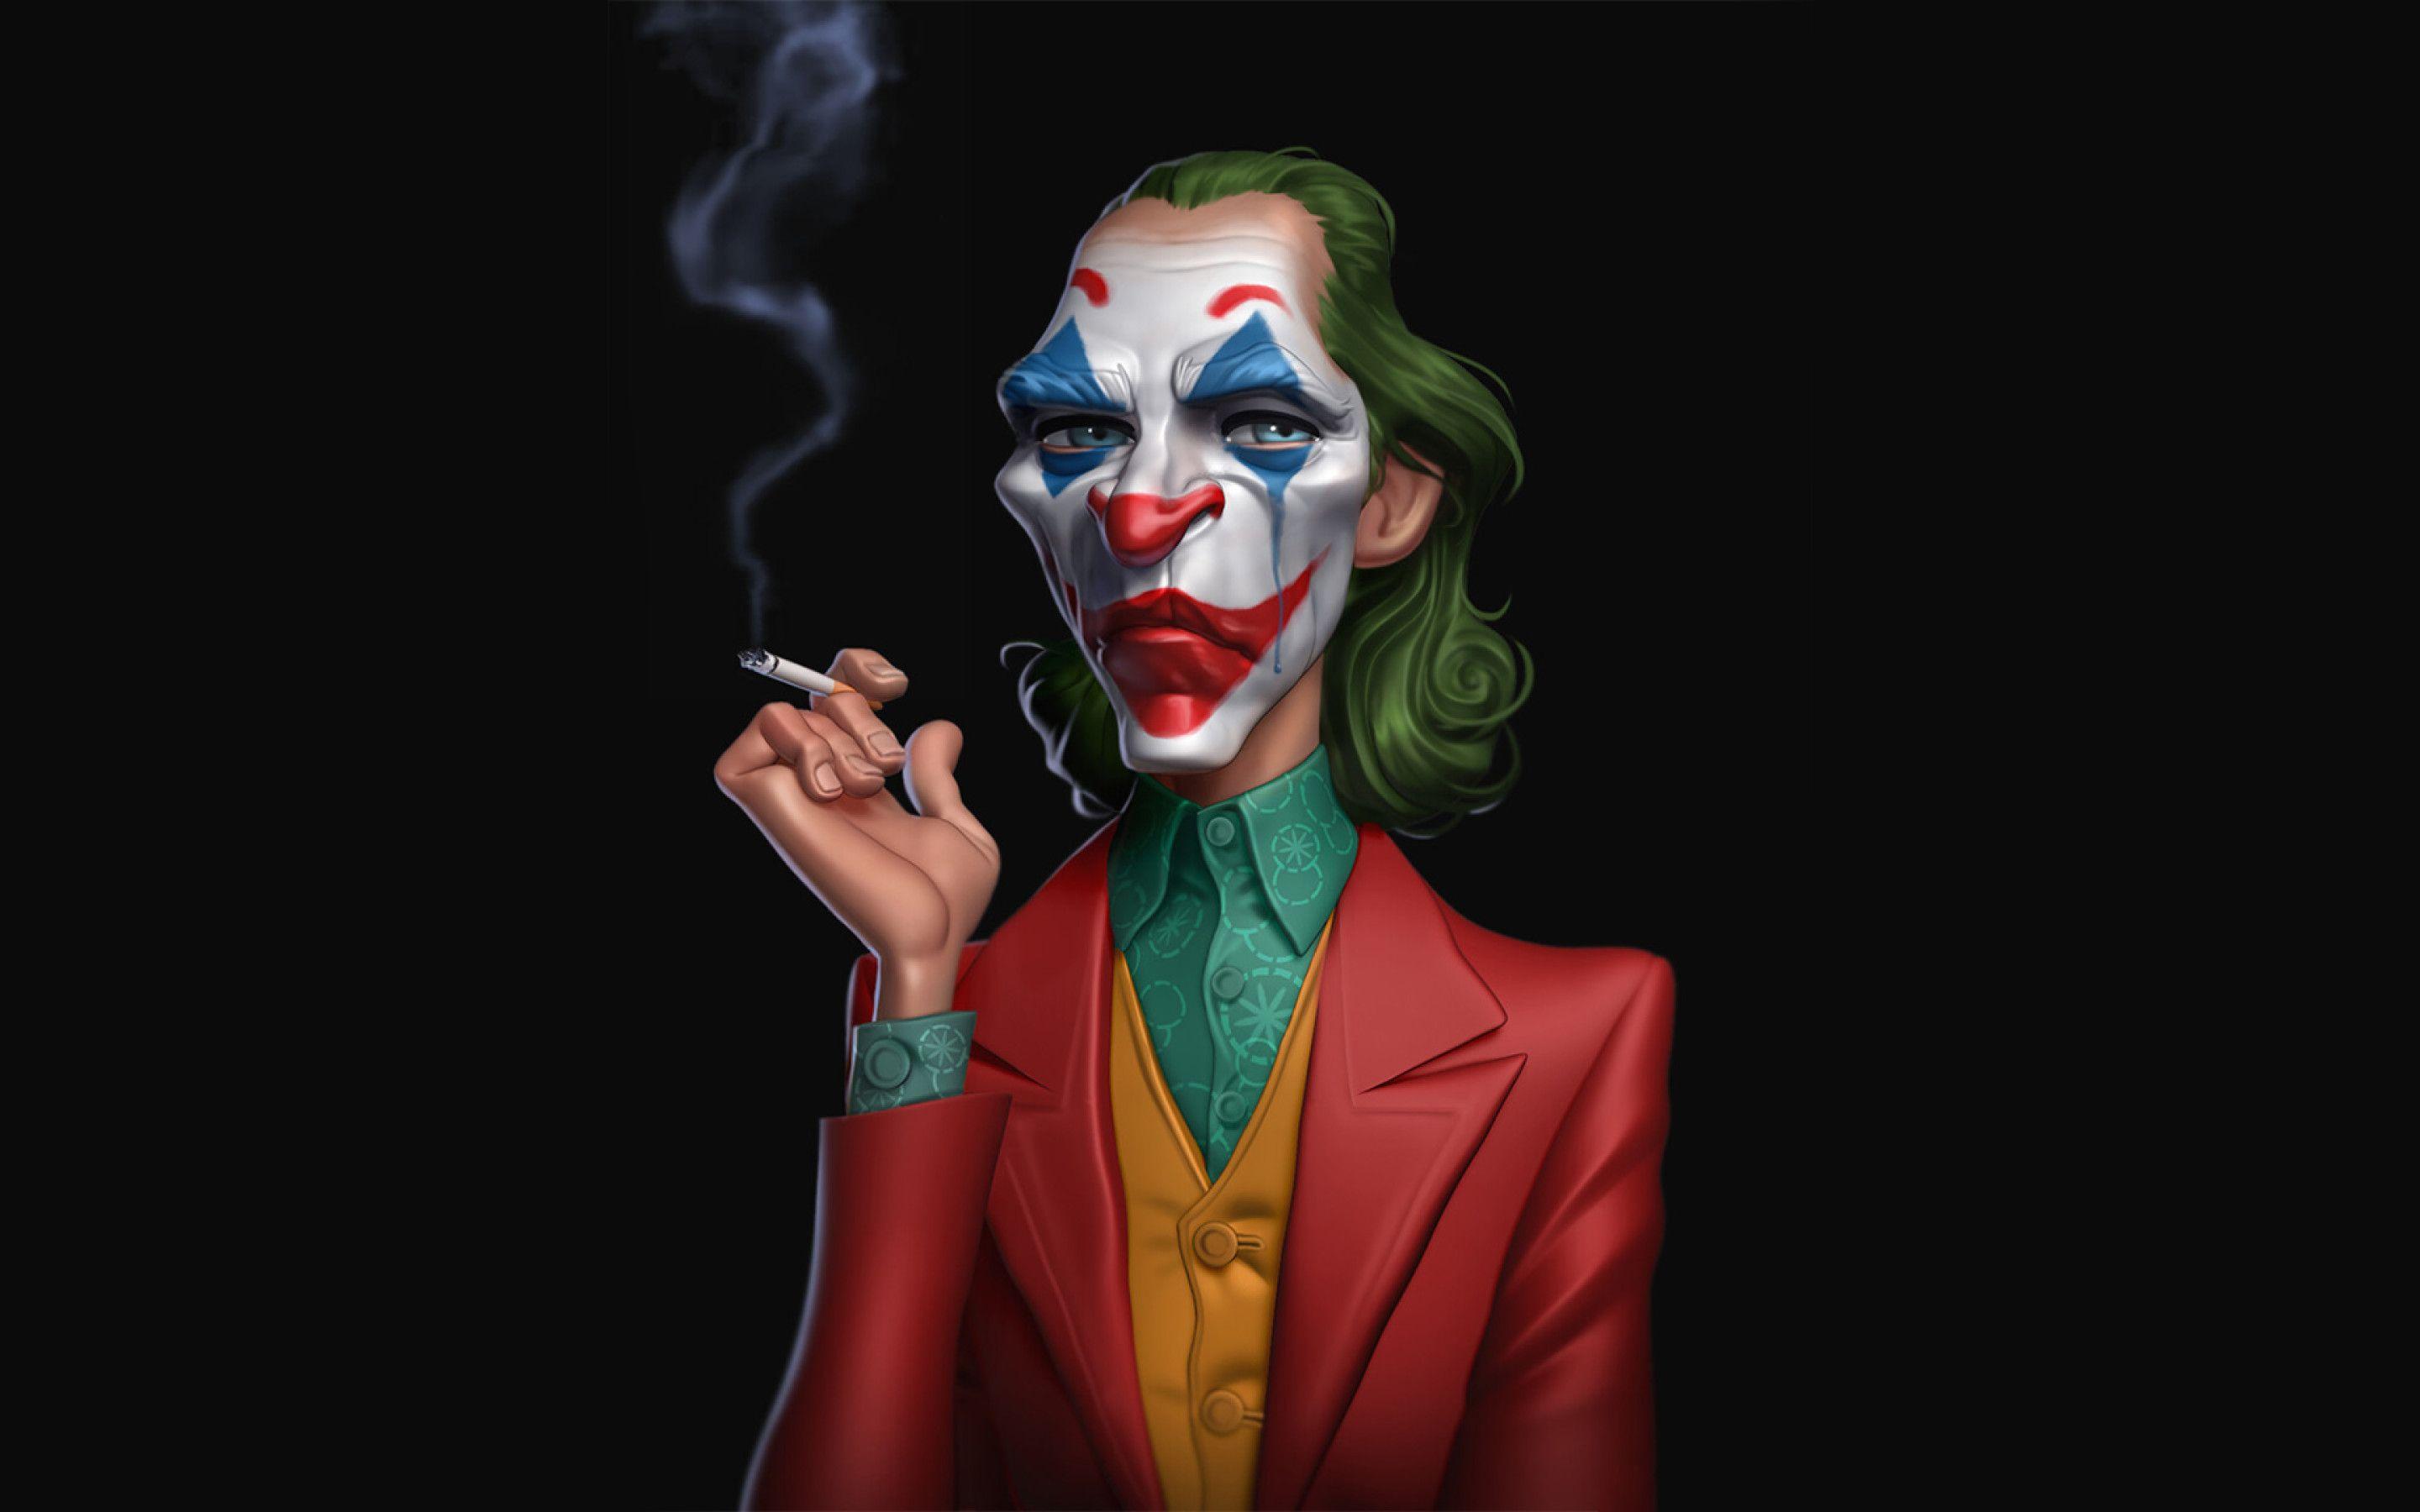 Joker 2019 Smoking Wallpapers - Top Free Joker 2019 Smoking Backgrounds ...